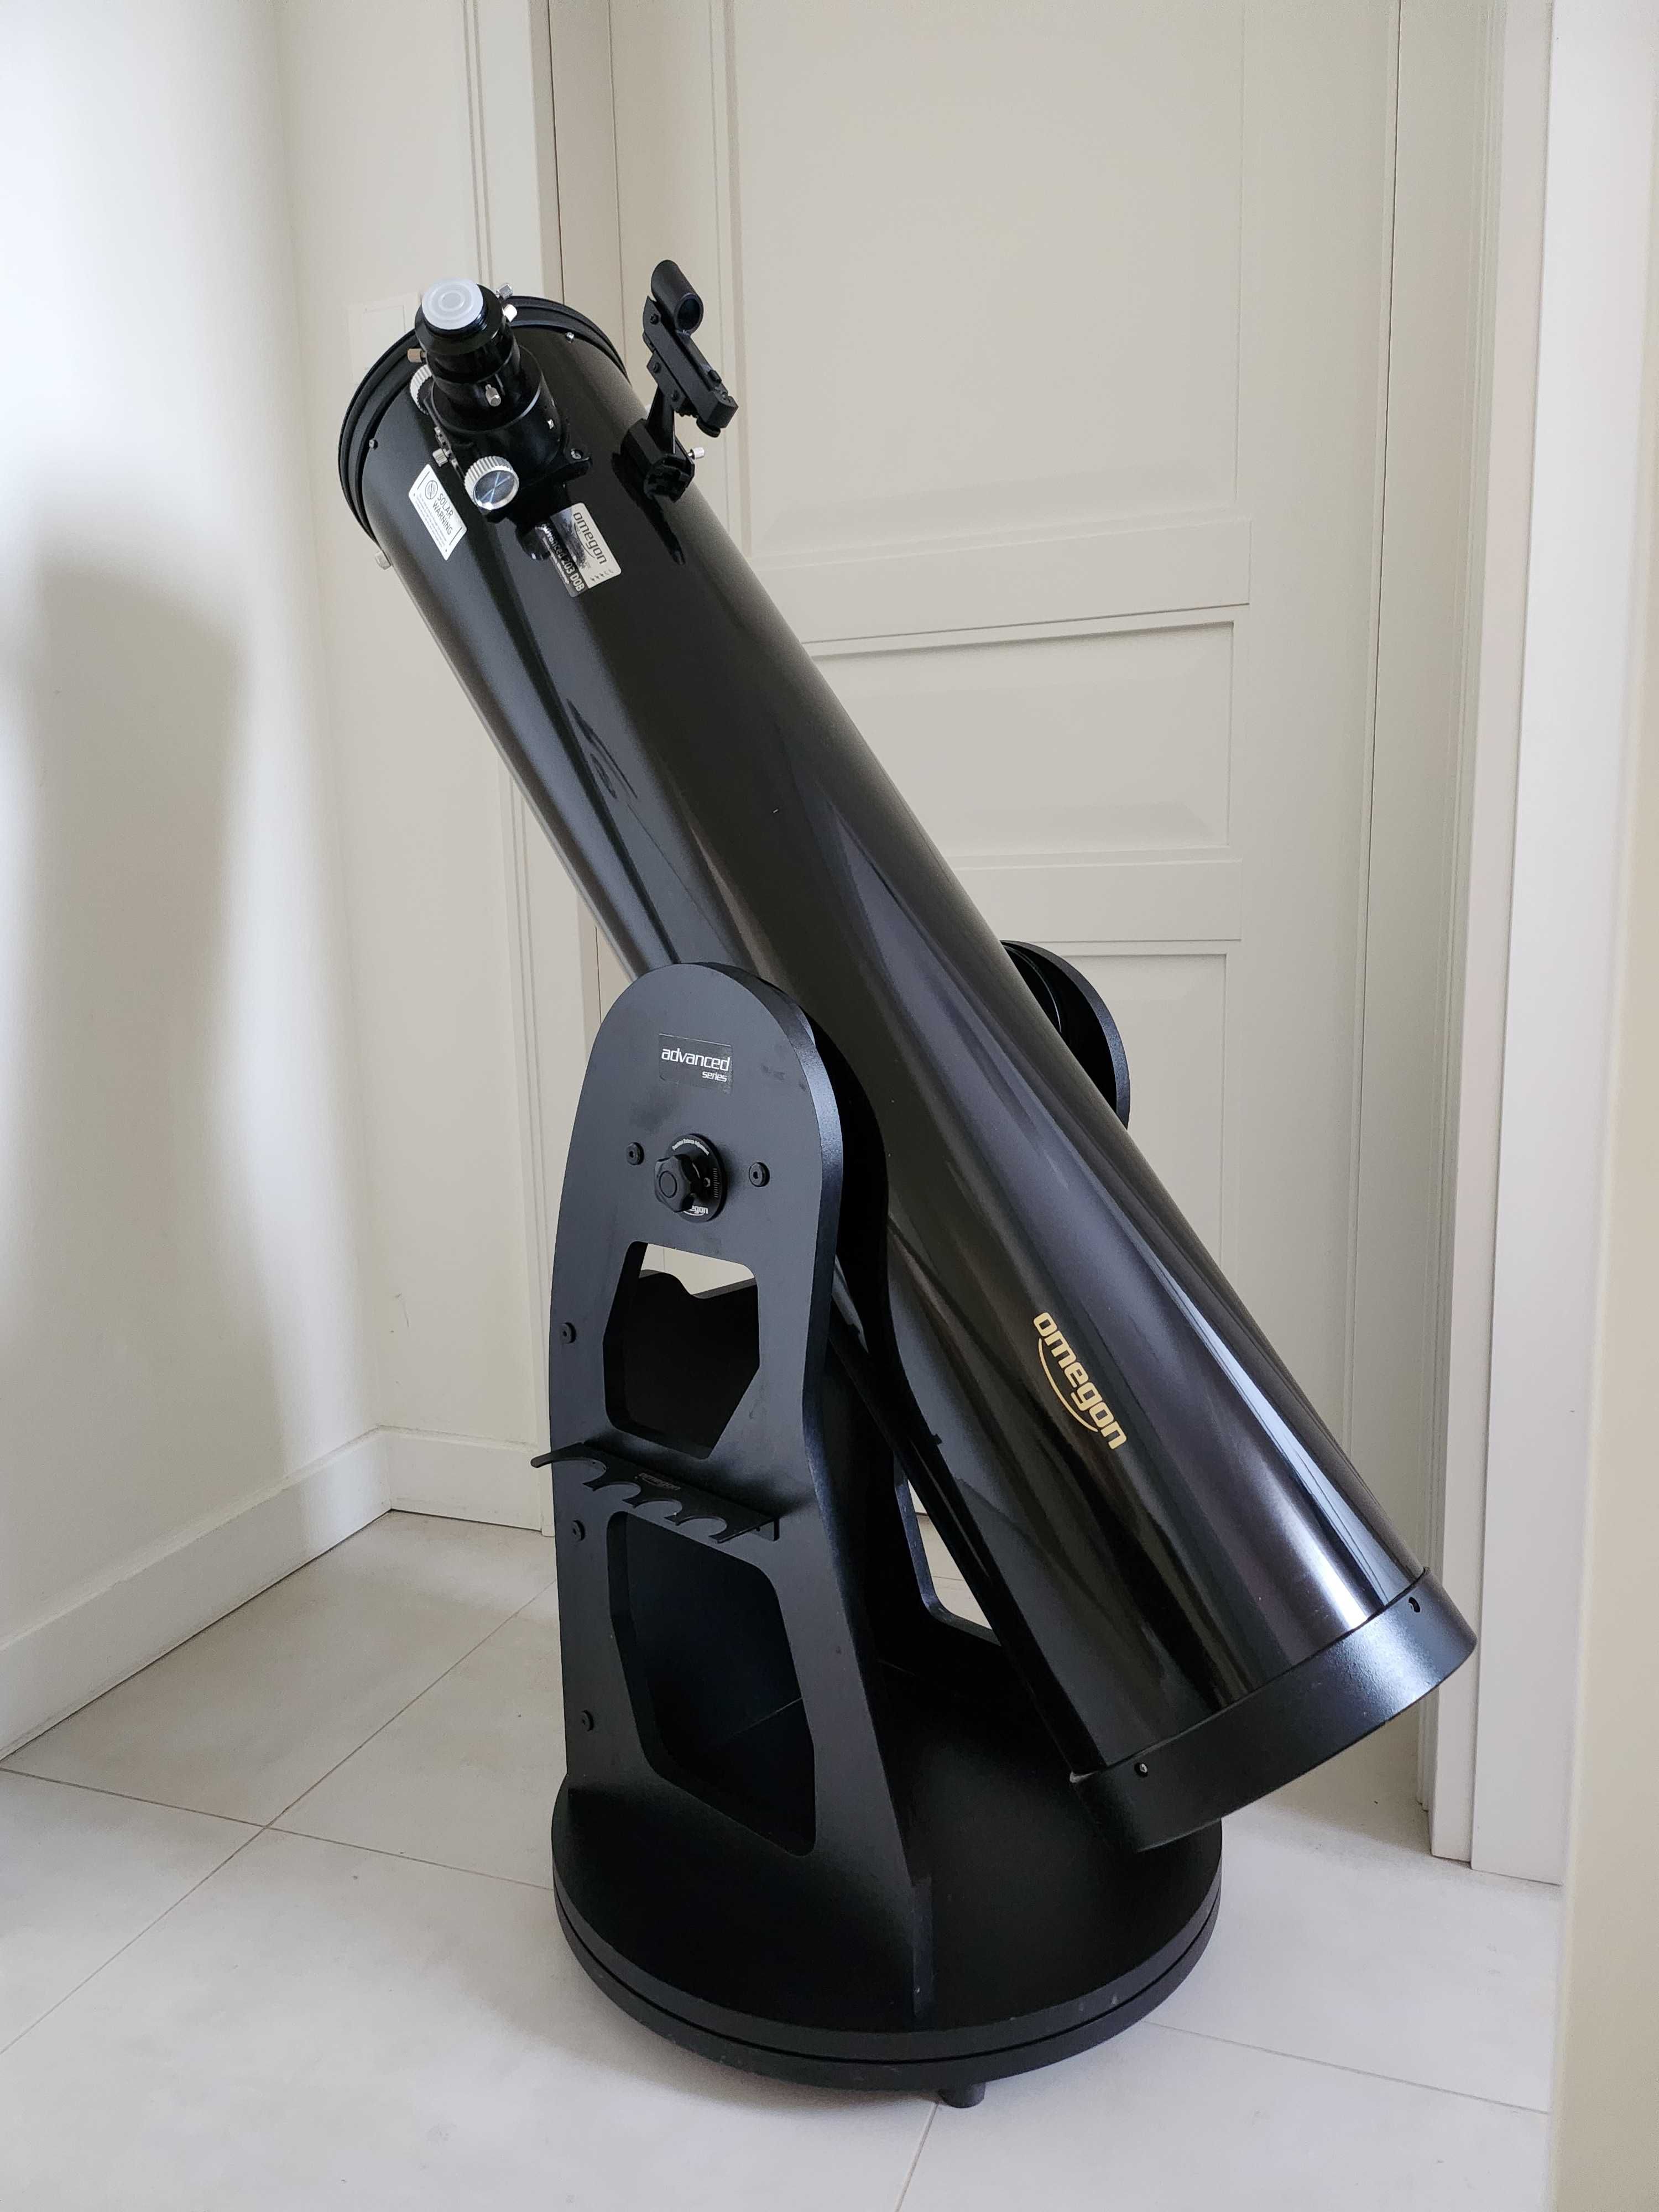 Teleskop Dobsona Advanced N 203/1200 - Nie używany